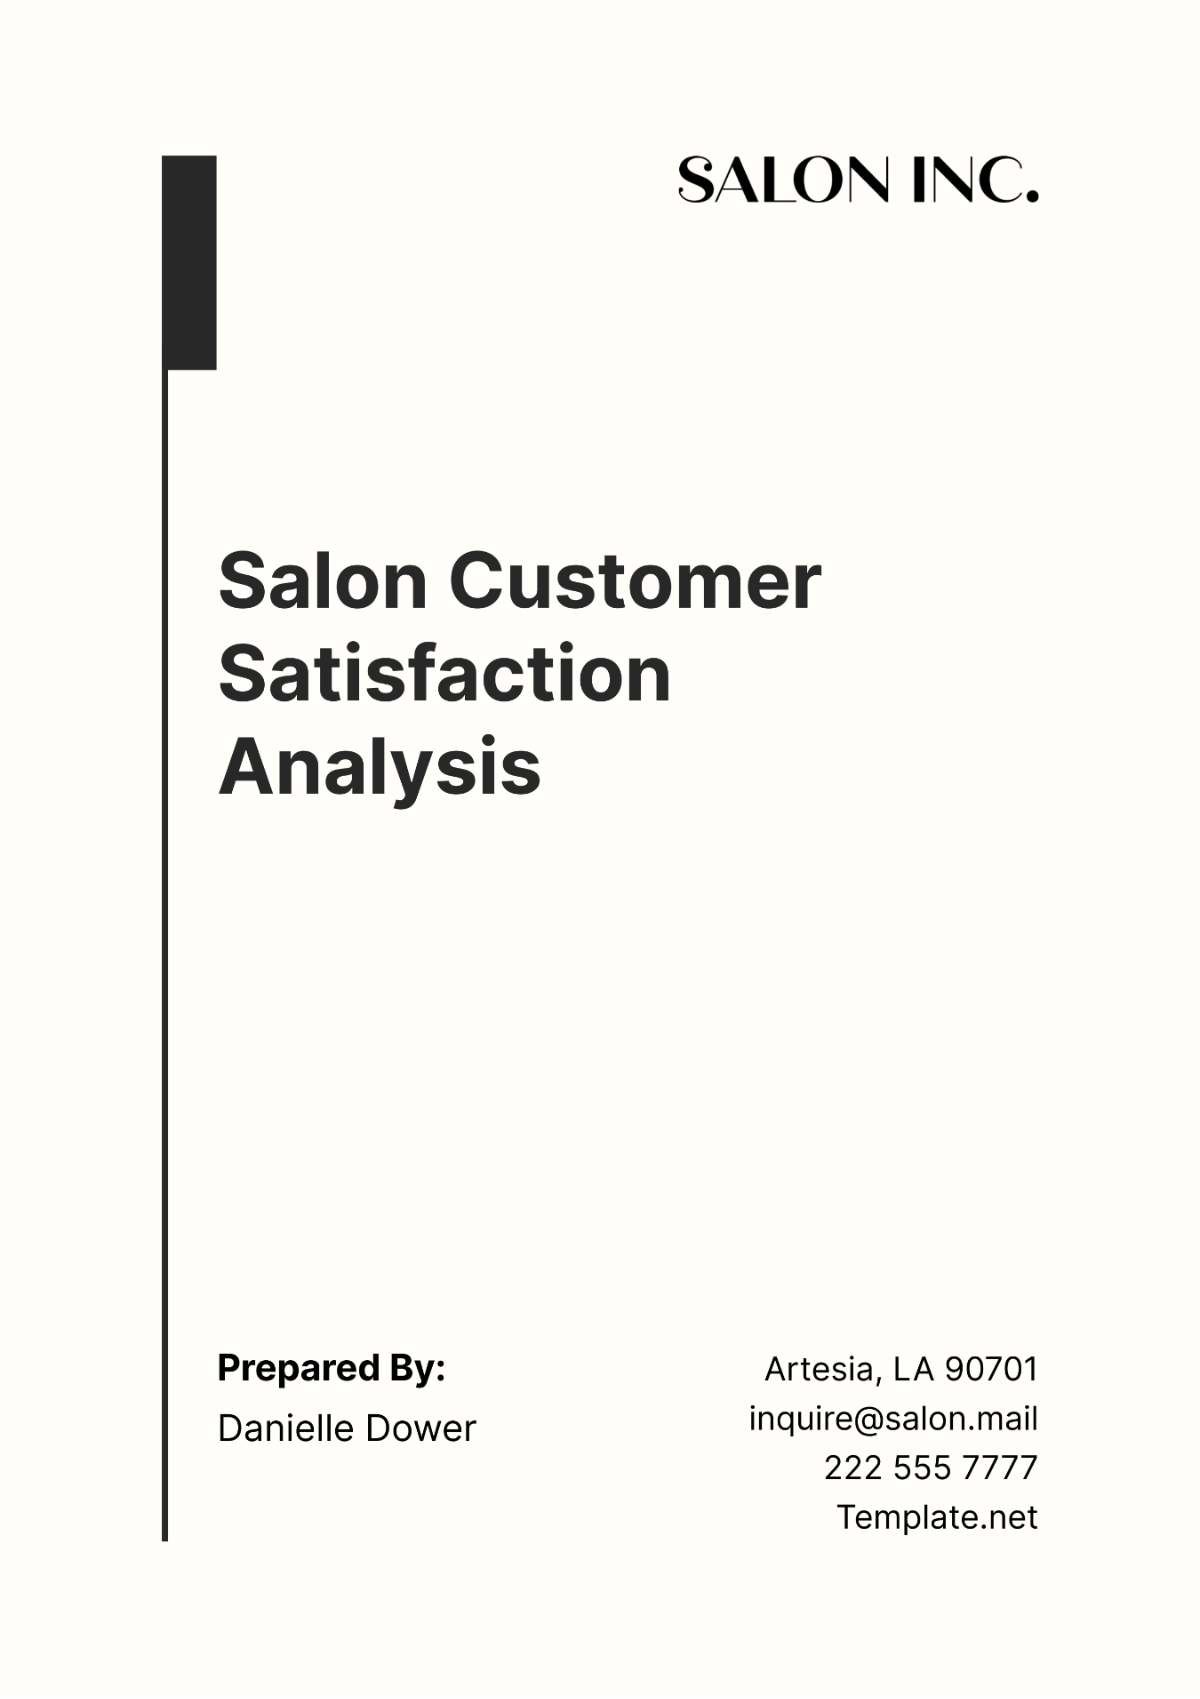 Salon Customer Satisfaction Analysis Template